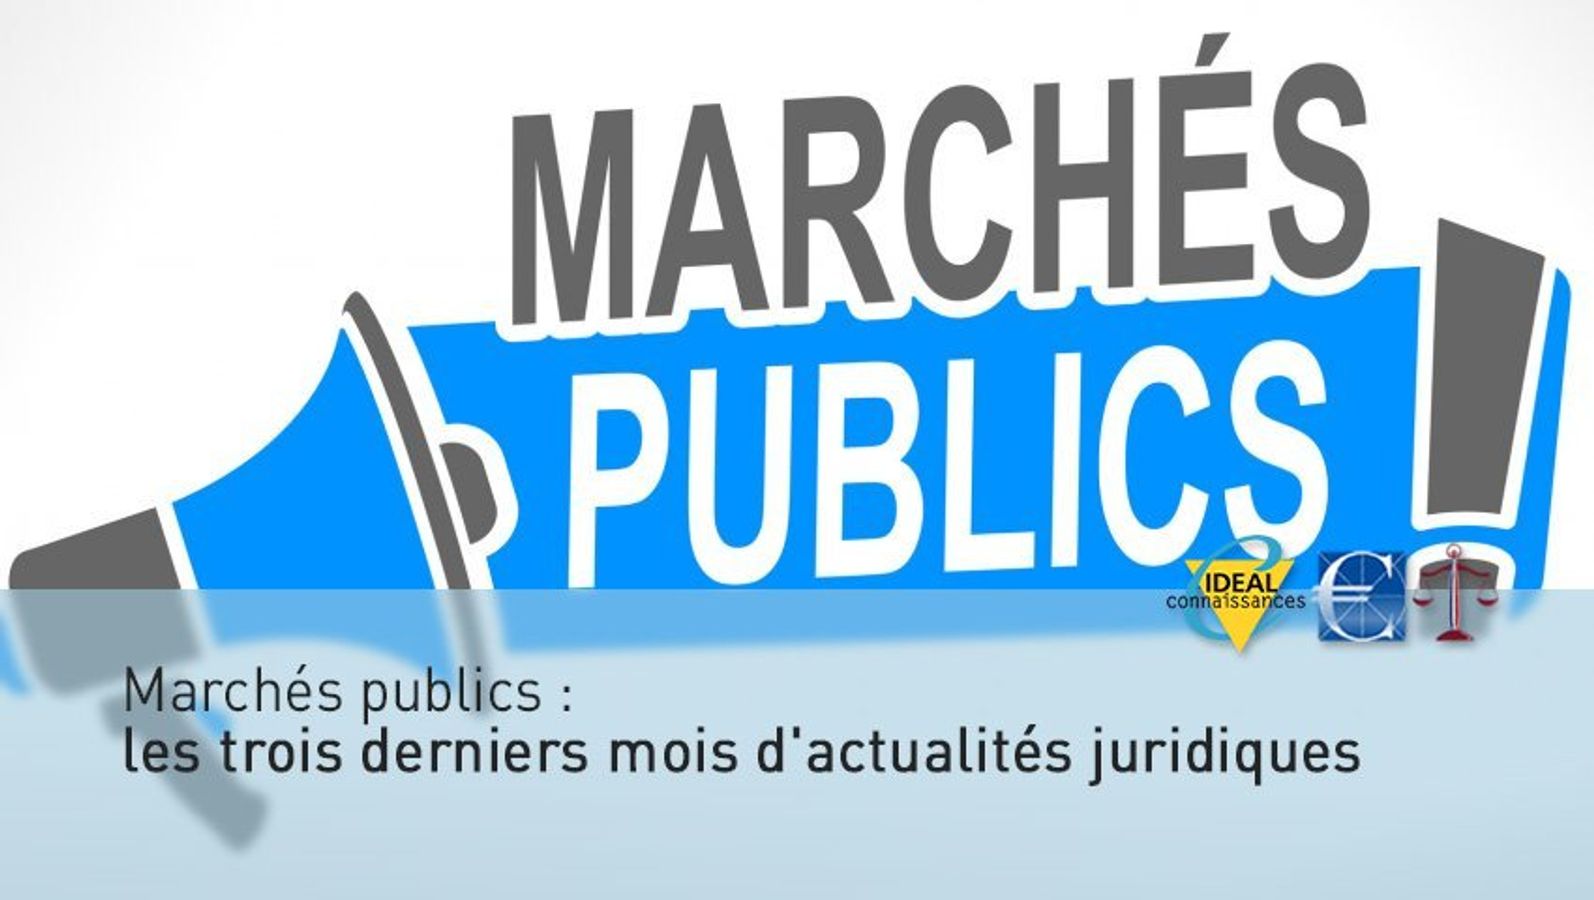 Marchés publics : les derniers mois d'actualités juridiques (4)